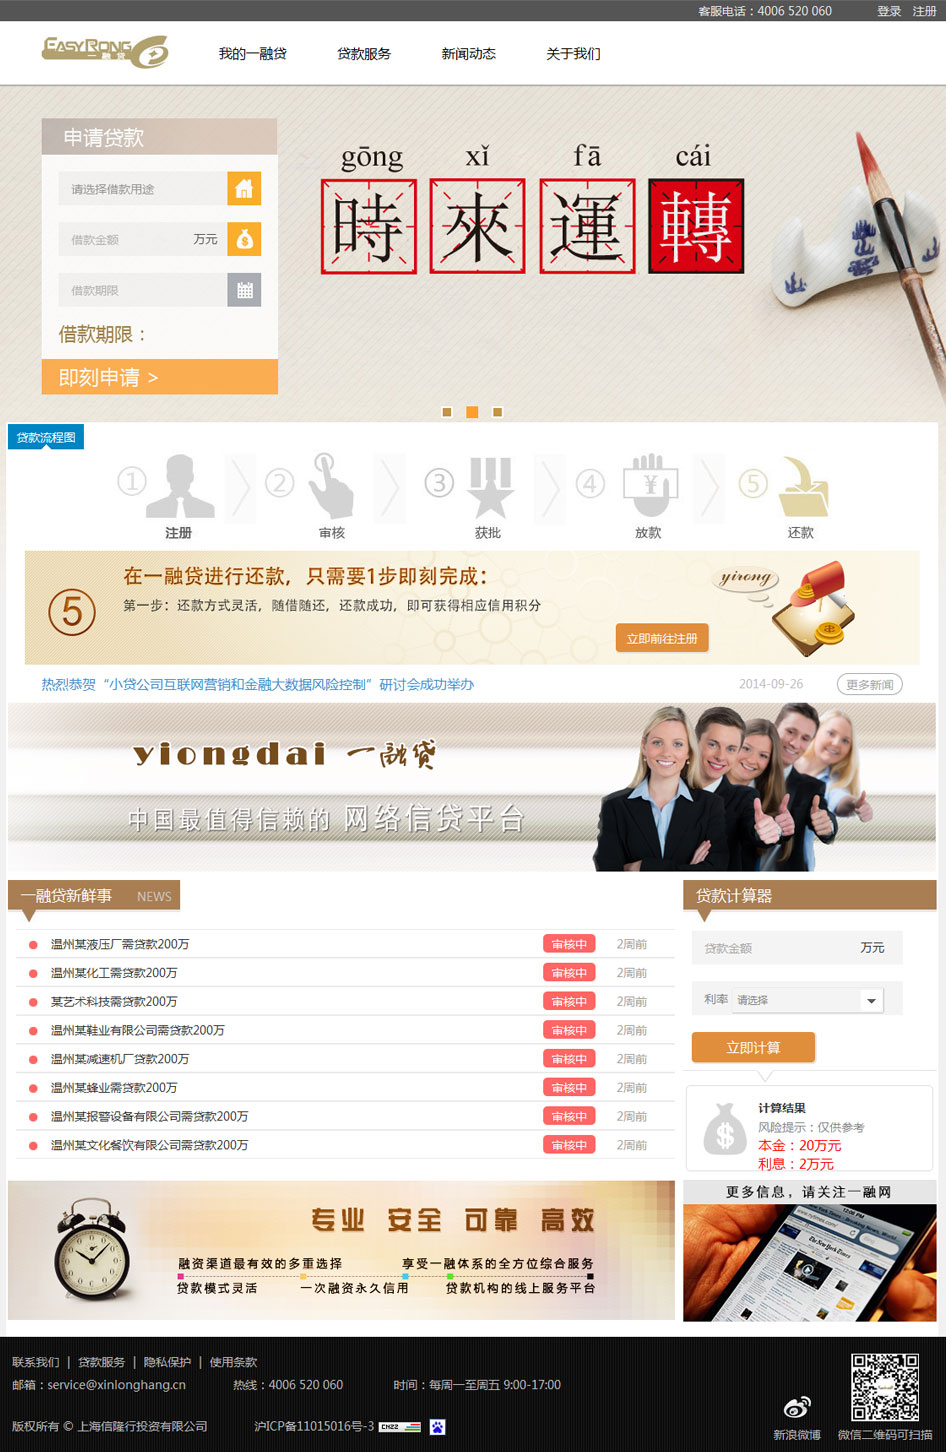 志勋网络与上海信隆行投资有限公司合作一融贷网络投资平台网站建设项目